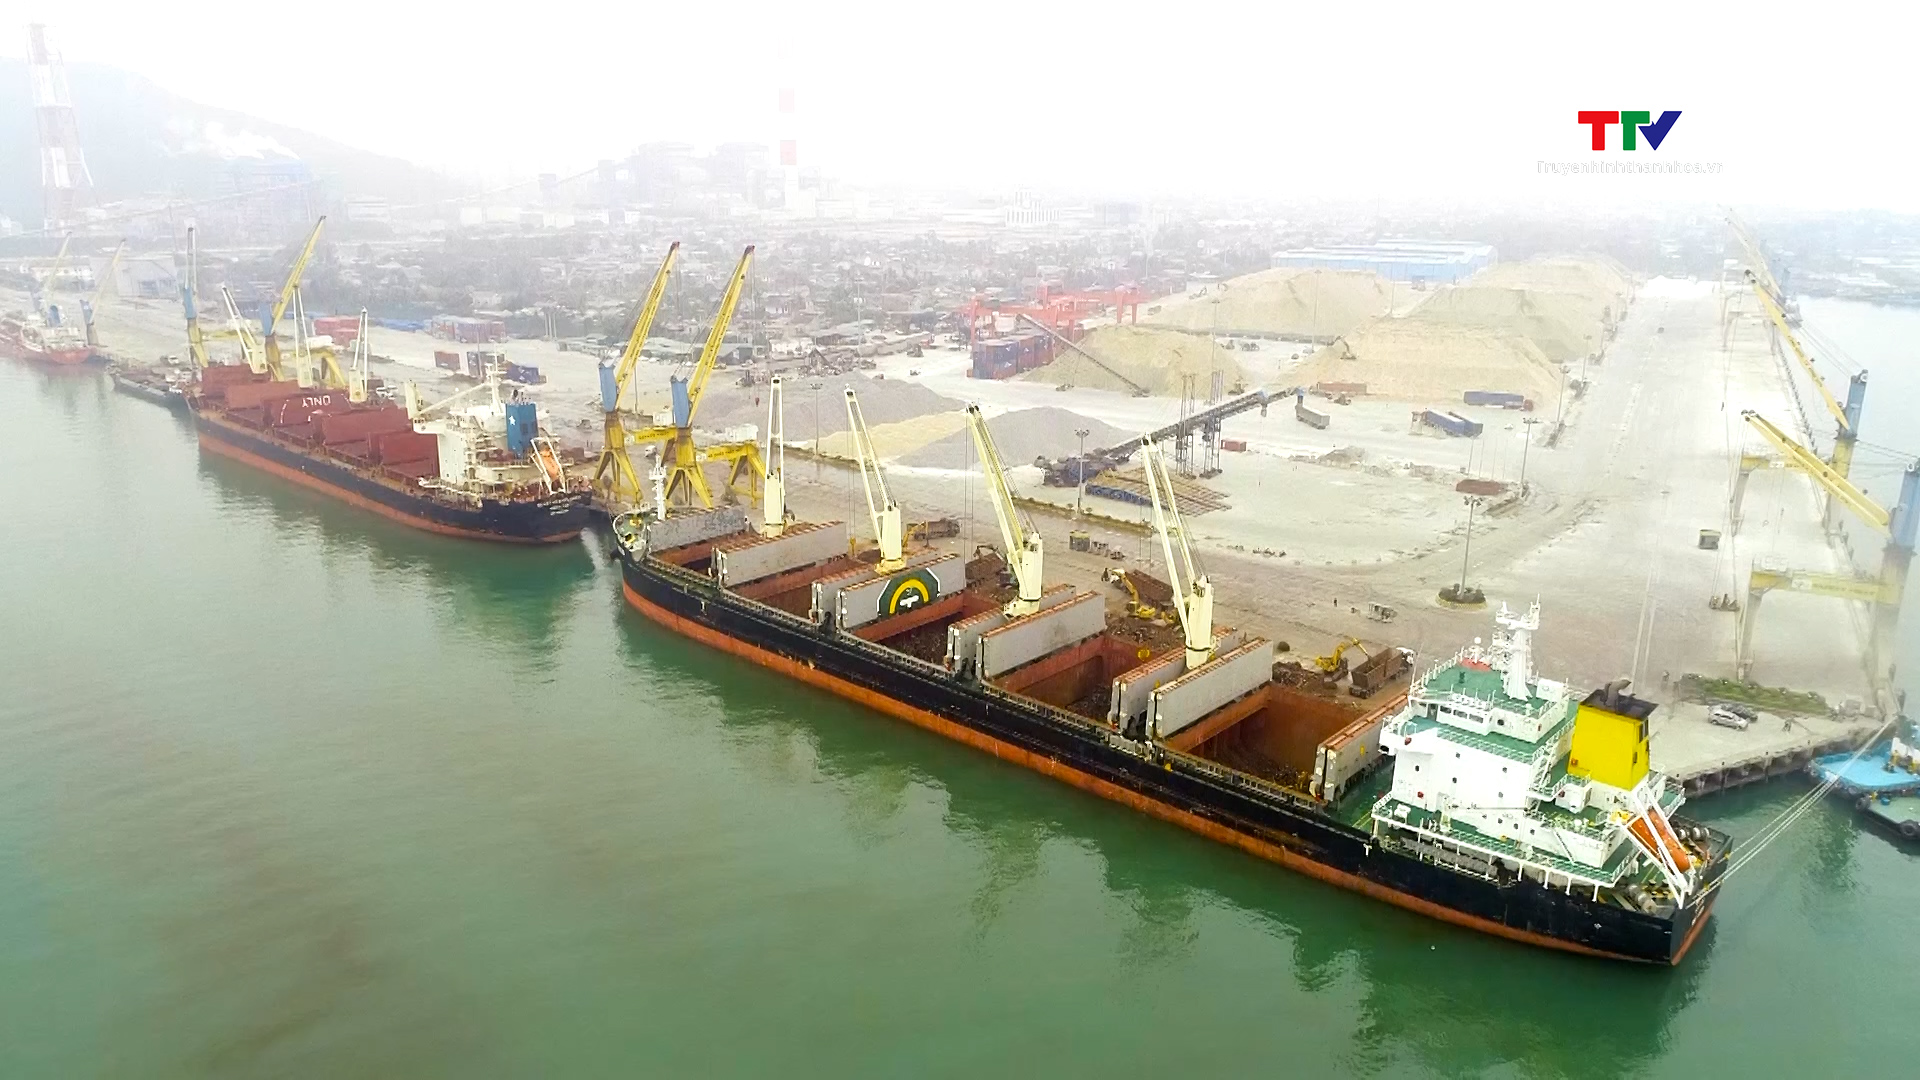 Xây dựng Bến số 3, Cảng Container Long Sơn - Vì lợi ích kinh tế - xã hội lâu dài - Ảnh 3.